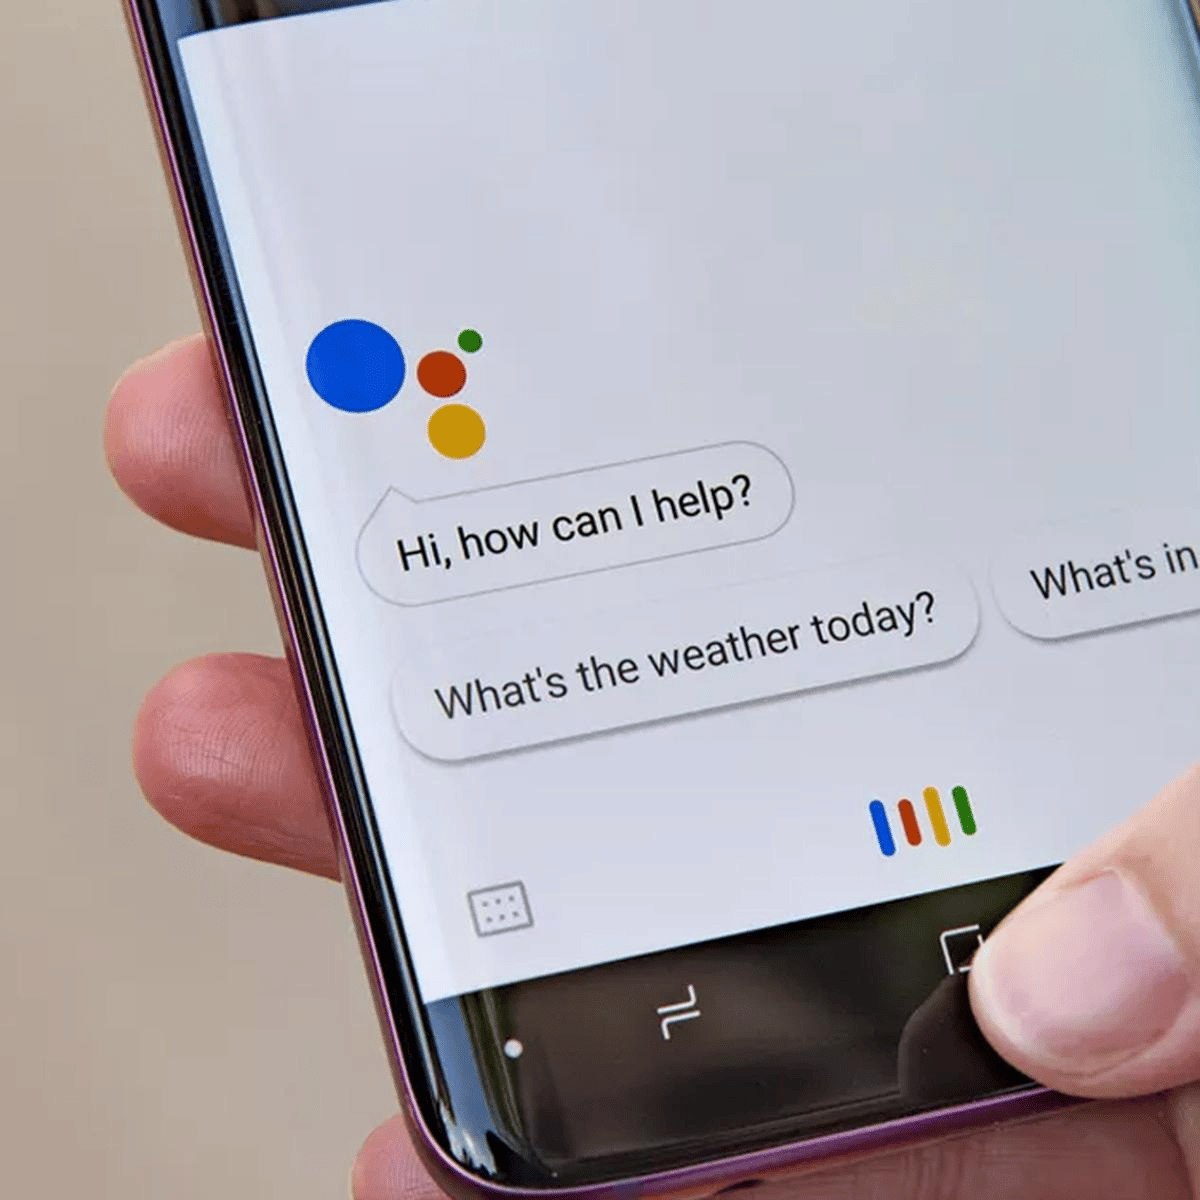 Ok Google: Cómo configurar mi dispositivo con el asistente de voz de Google